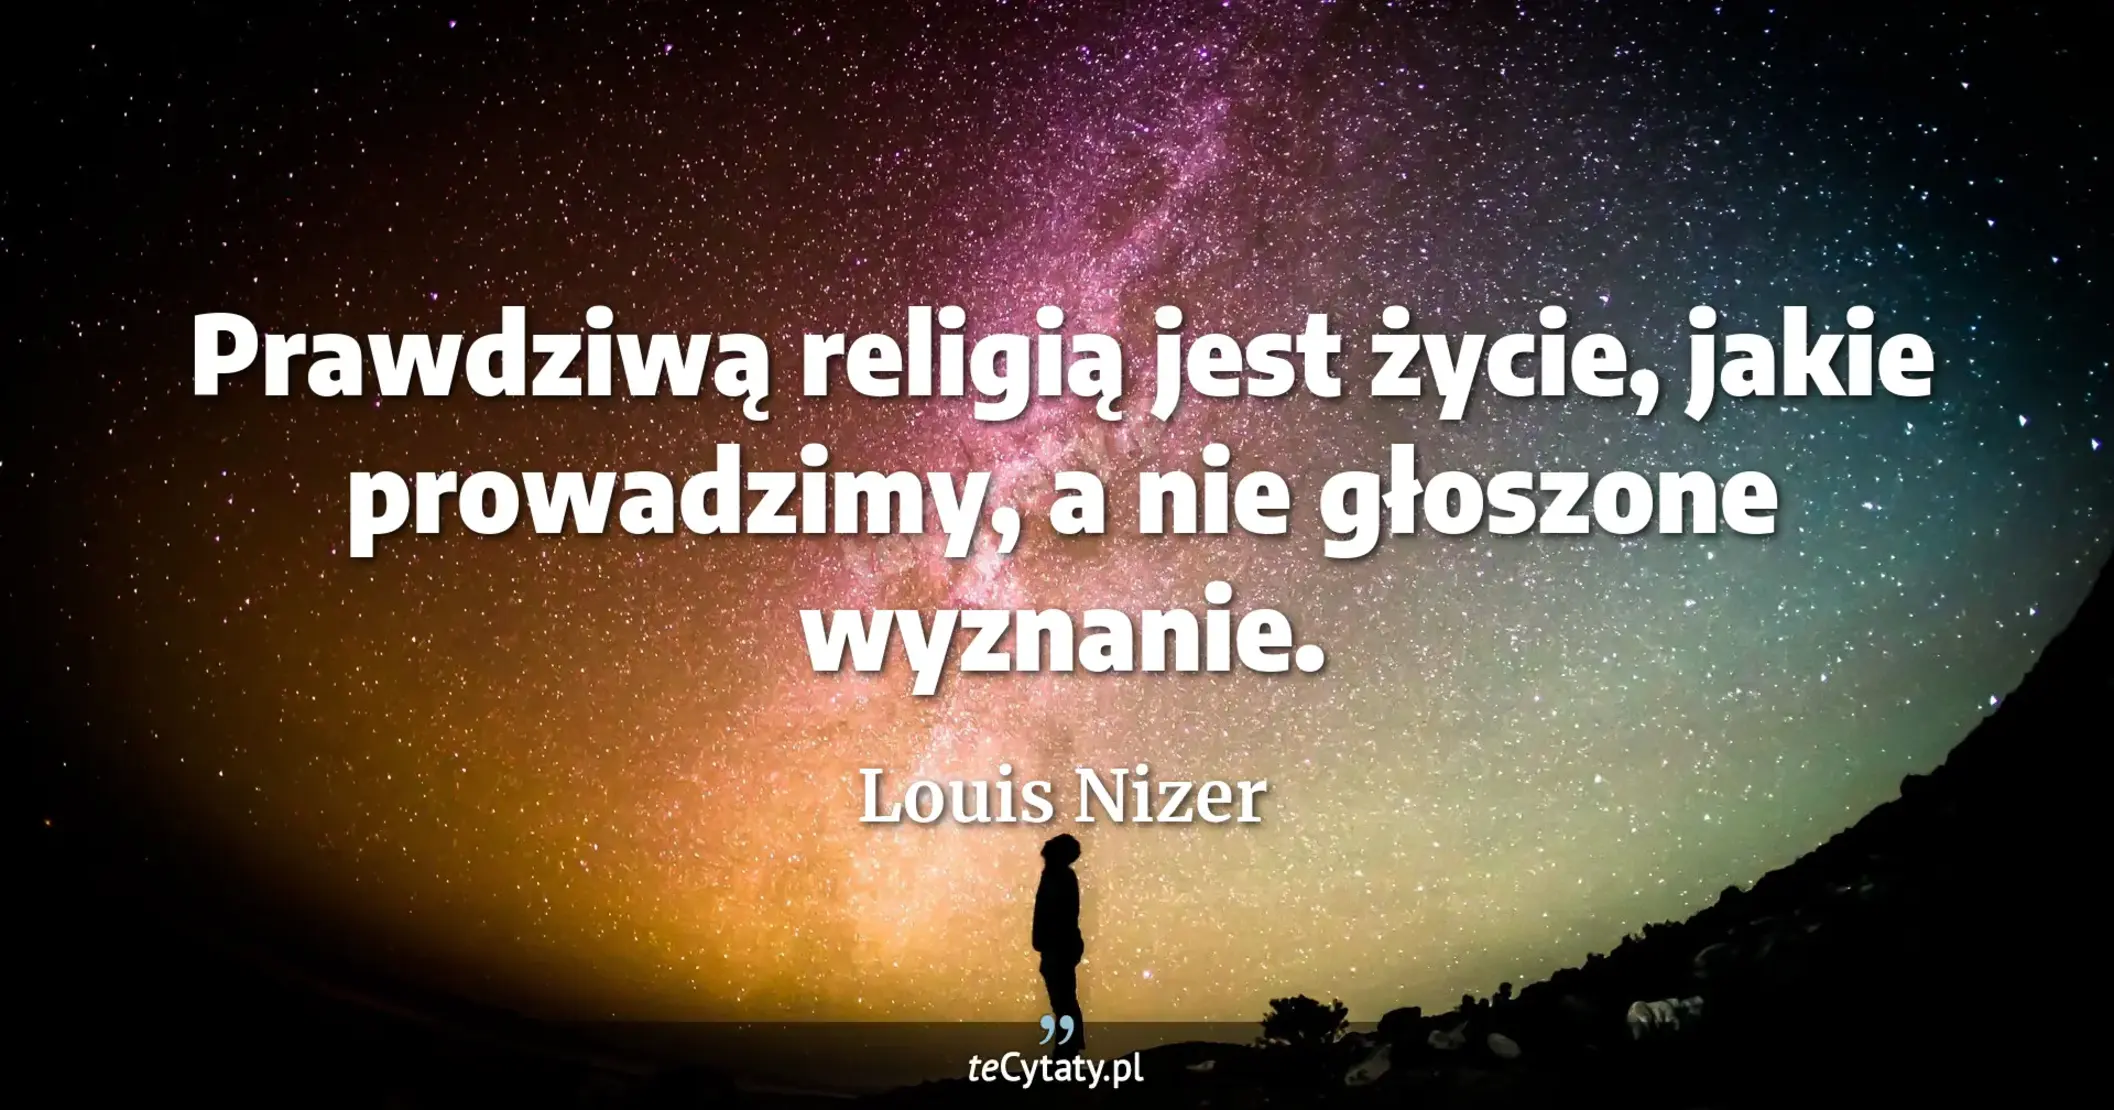 Prawdziwą religią jest życie, jakie prowadzimy, a nie głoszone wyznanie. - Louis Nizer